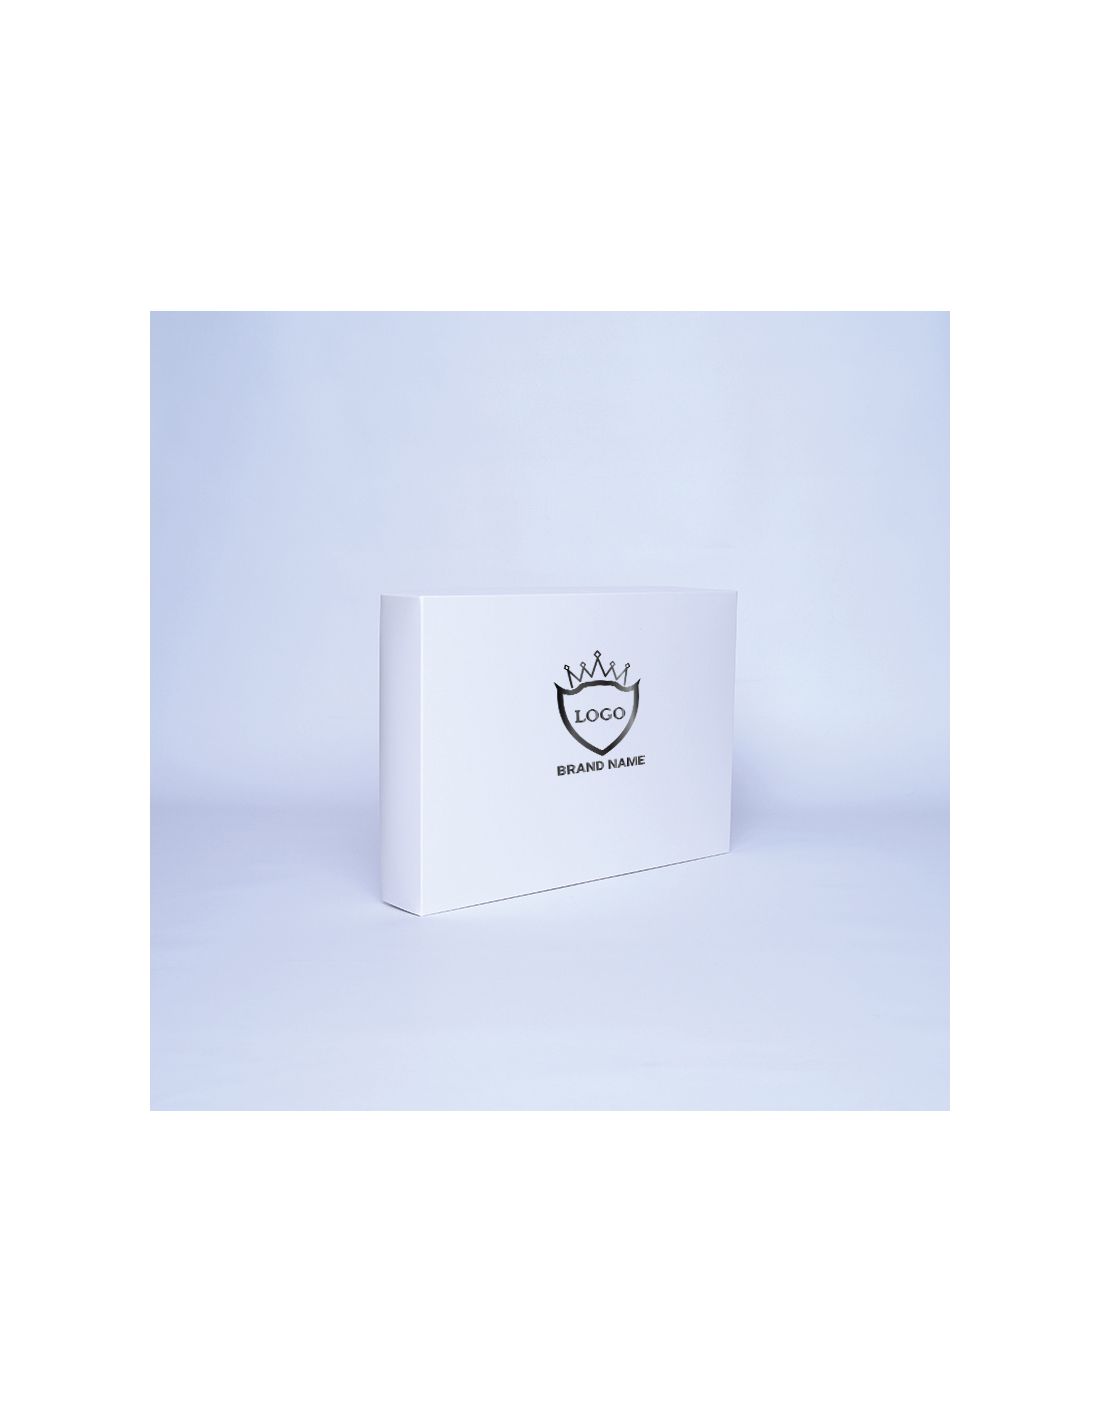 Caja personalizada Campana 37x26x6 CM | CAJA CAMPANA | ESTAMPADO EN CALIENTE